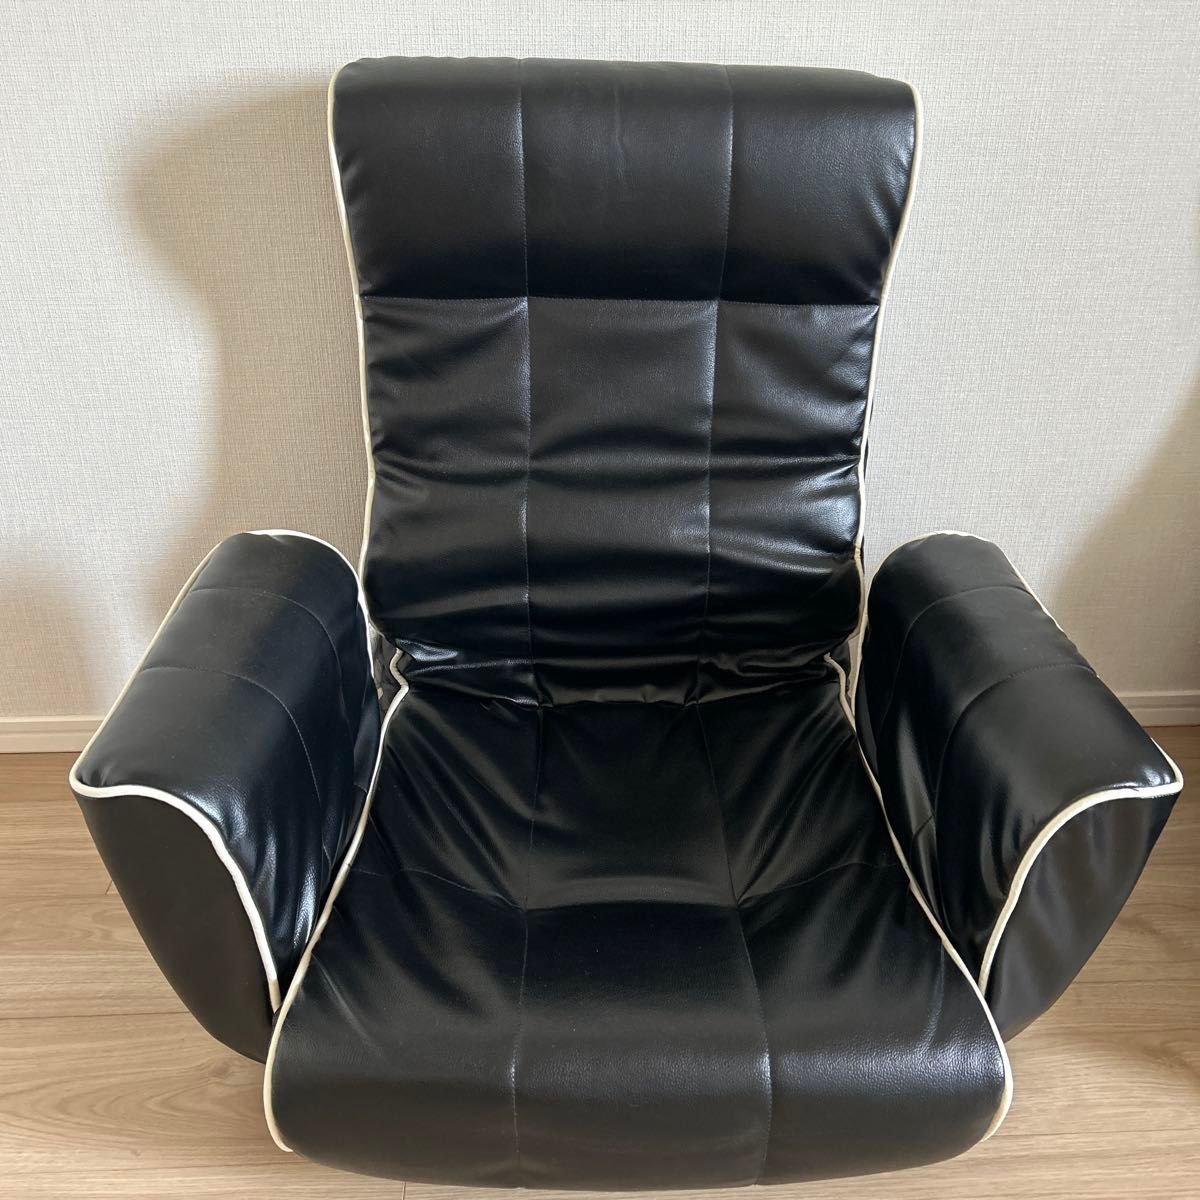 ニトリの1人用座椅子です。幅680mm×奥行き570-780mm×高さ350-715mmです。6段階リクライニング調整が可能です。